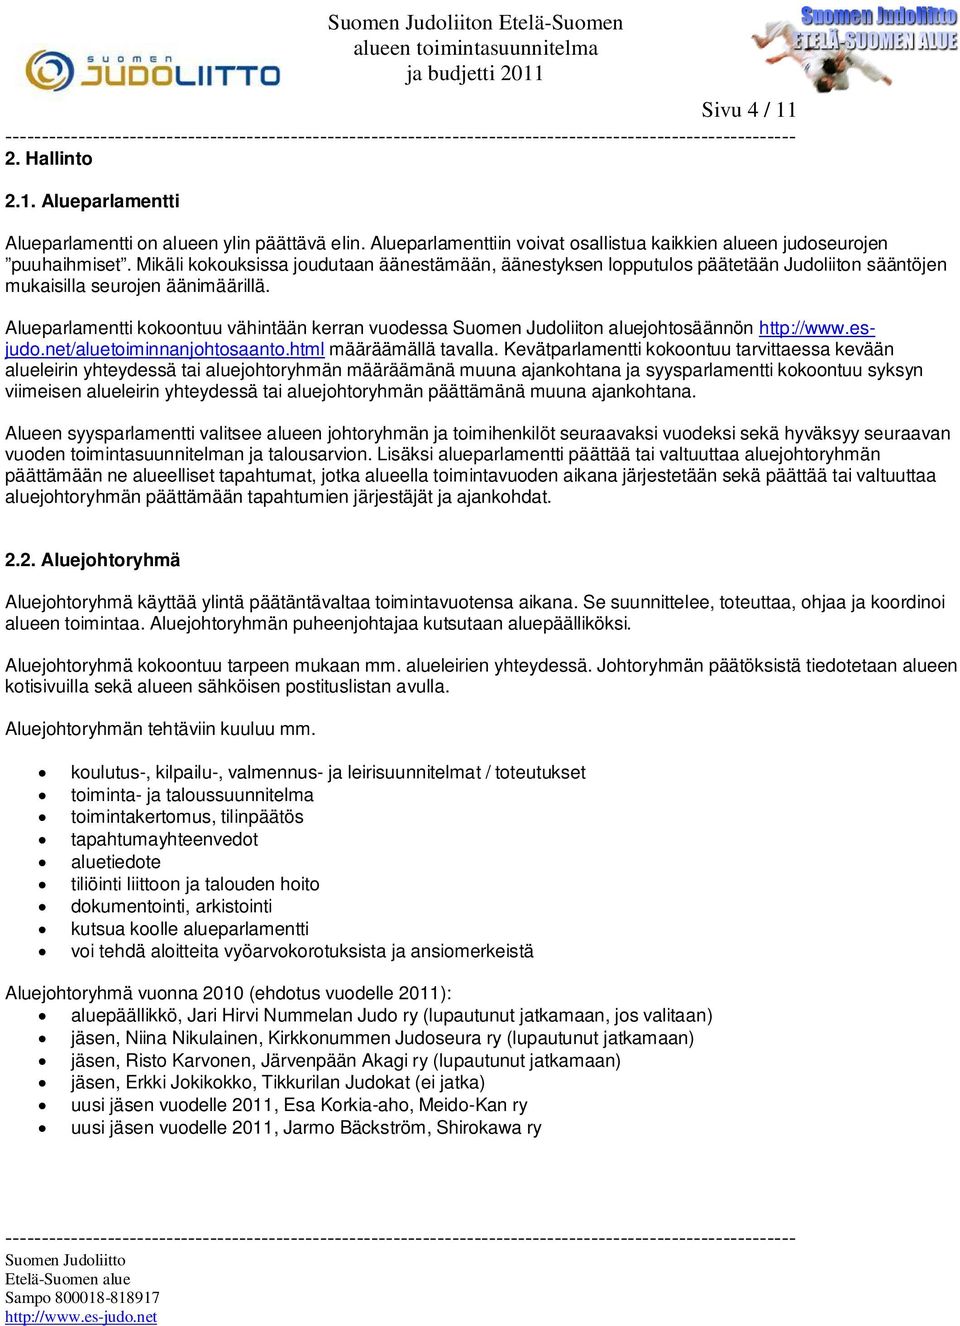 Alueparlamentti kokoontuu vähintään kerran vuodessa Suomen Judoliiton aluejohtosäännön http://www.esjudo.net/aluetoiminnanjohtosaanto.html määräämällä tavalla.